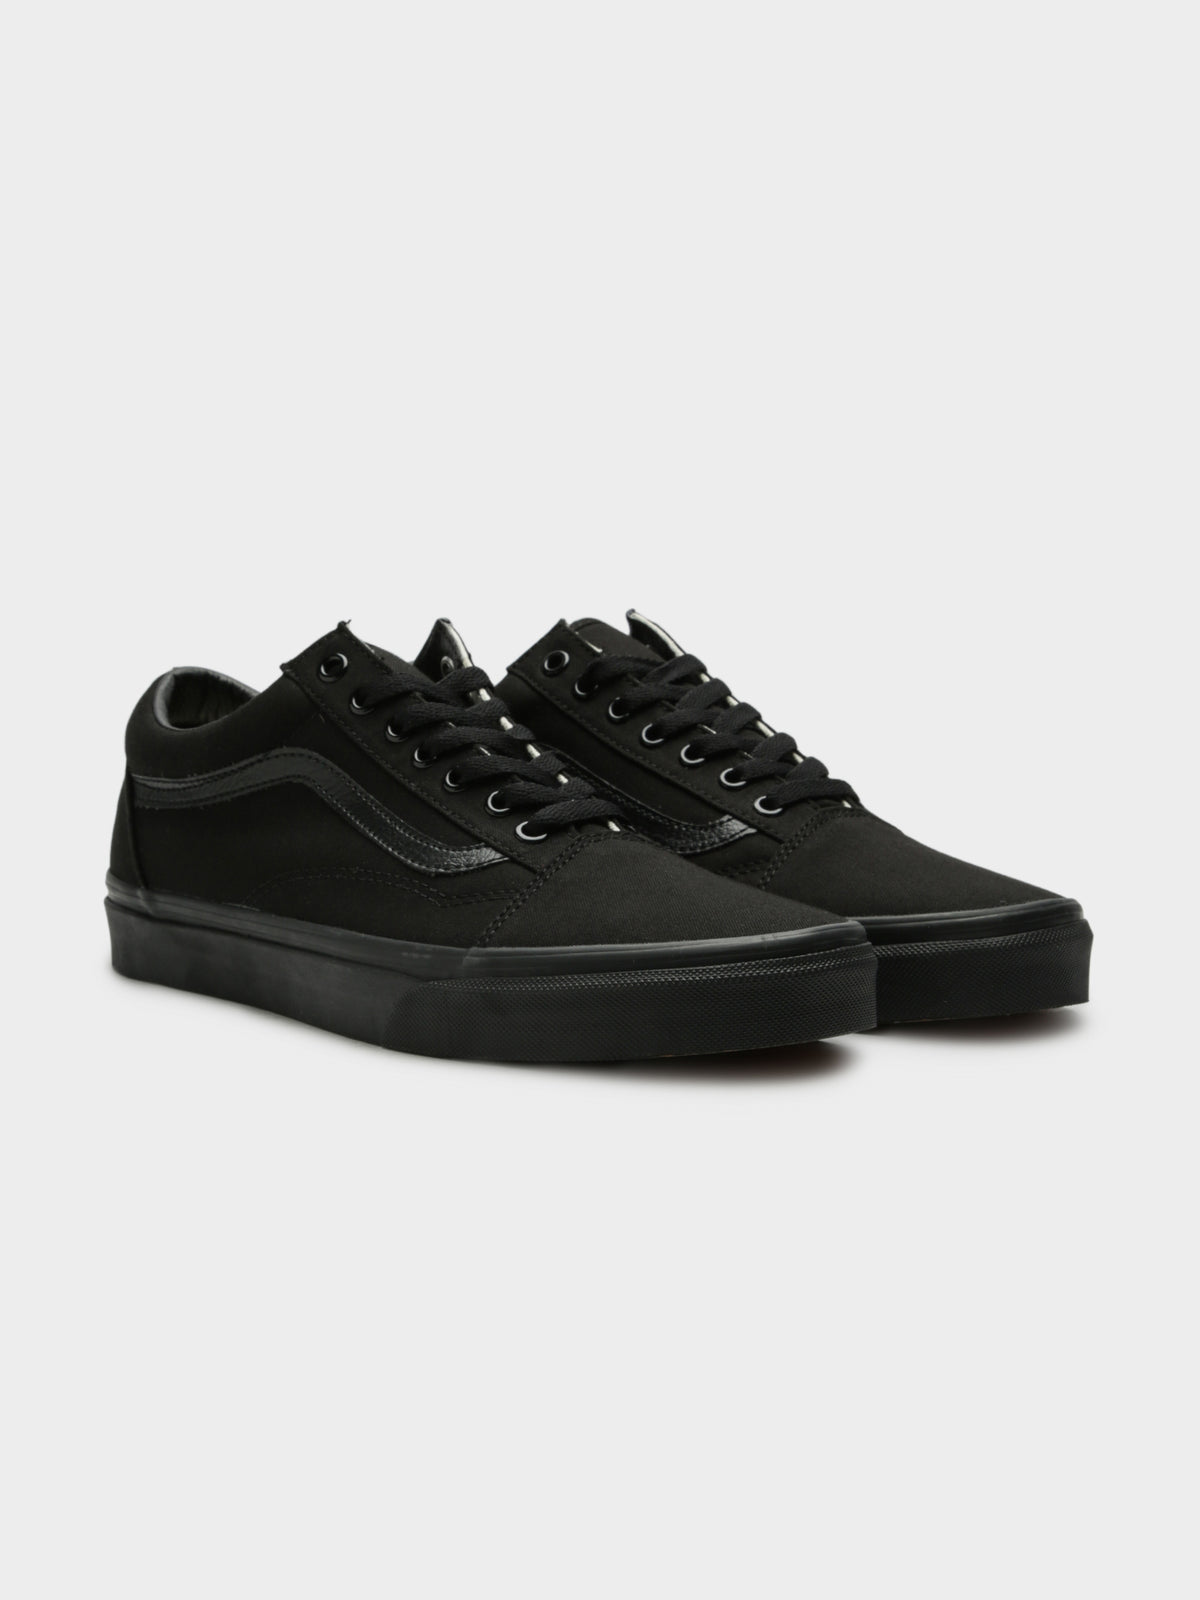 Unisex Old Skool Sneakers in All Black